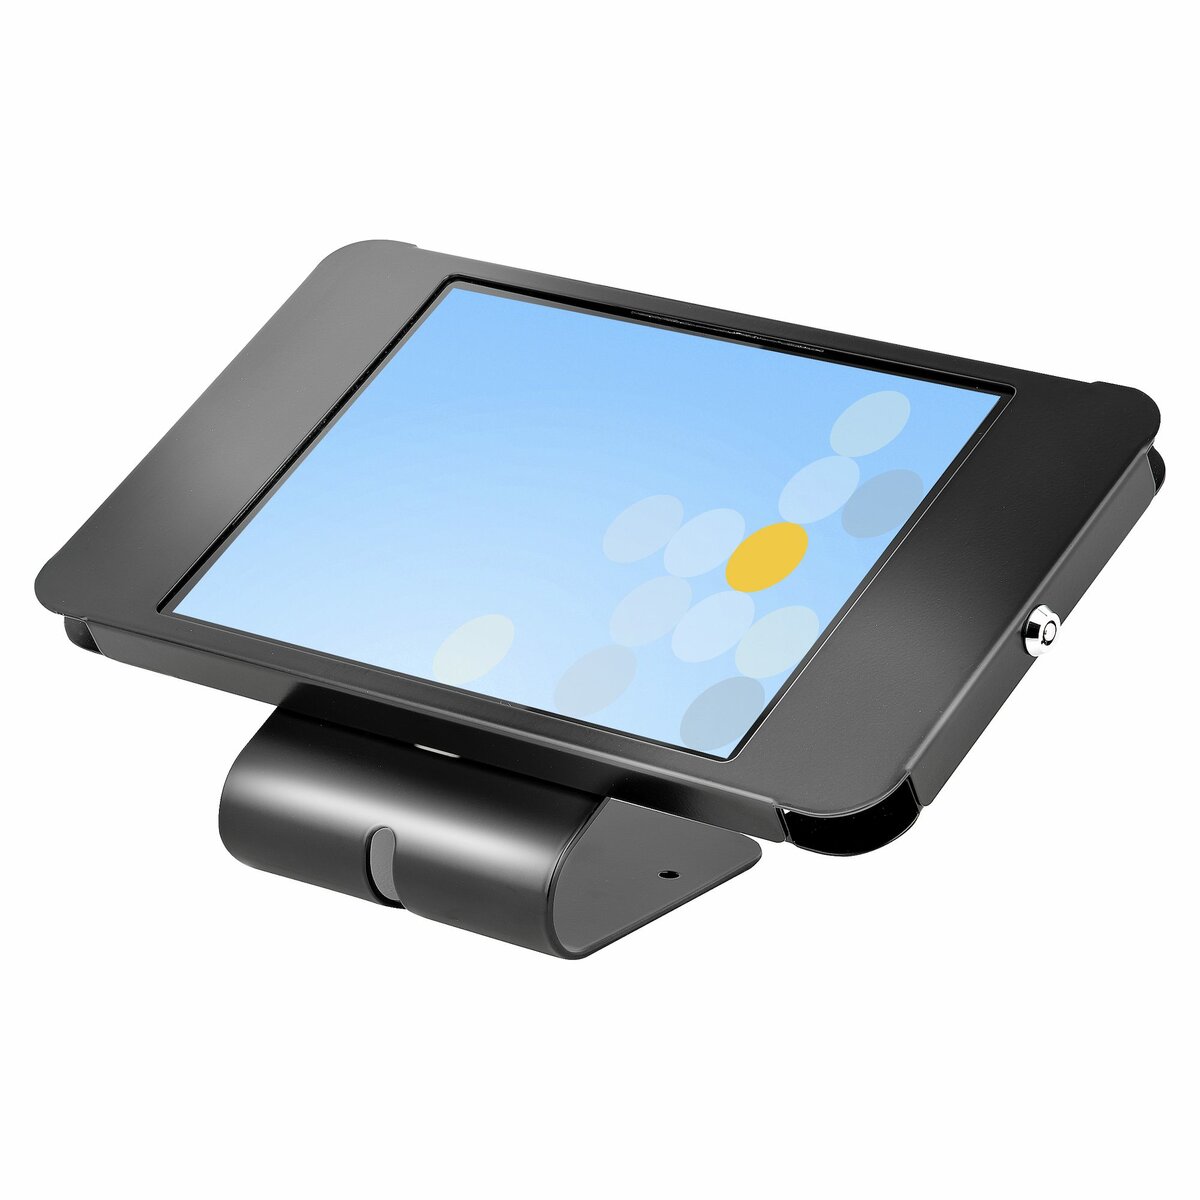 StarTech.com Support pour tablette tactile - Pliable - Pied